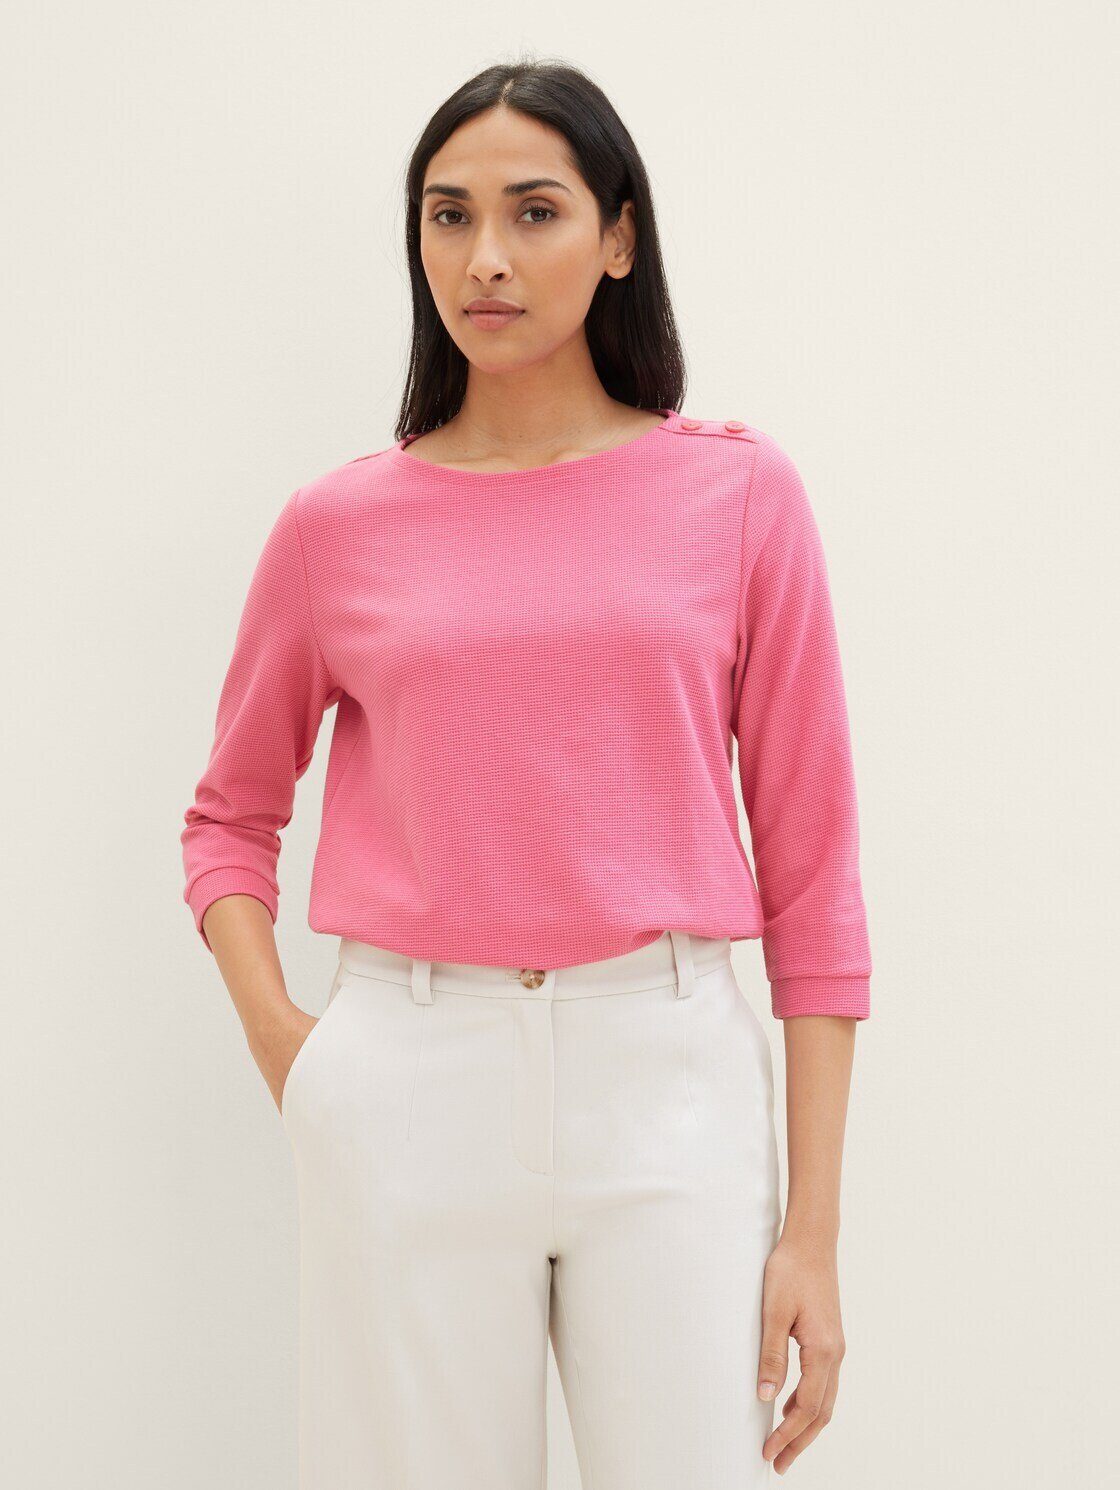 TOM TAILOR T-Shirt 3/4 Arm Shirt mit Bio-Baumwolle carmine pink